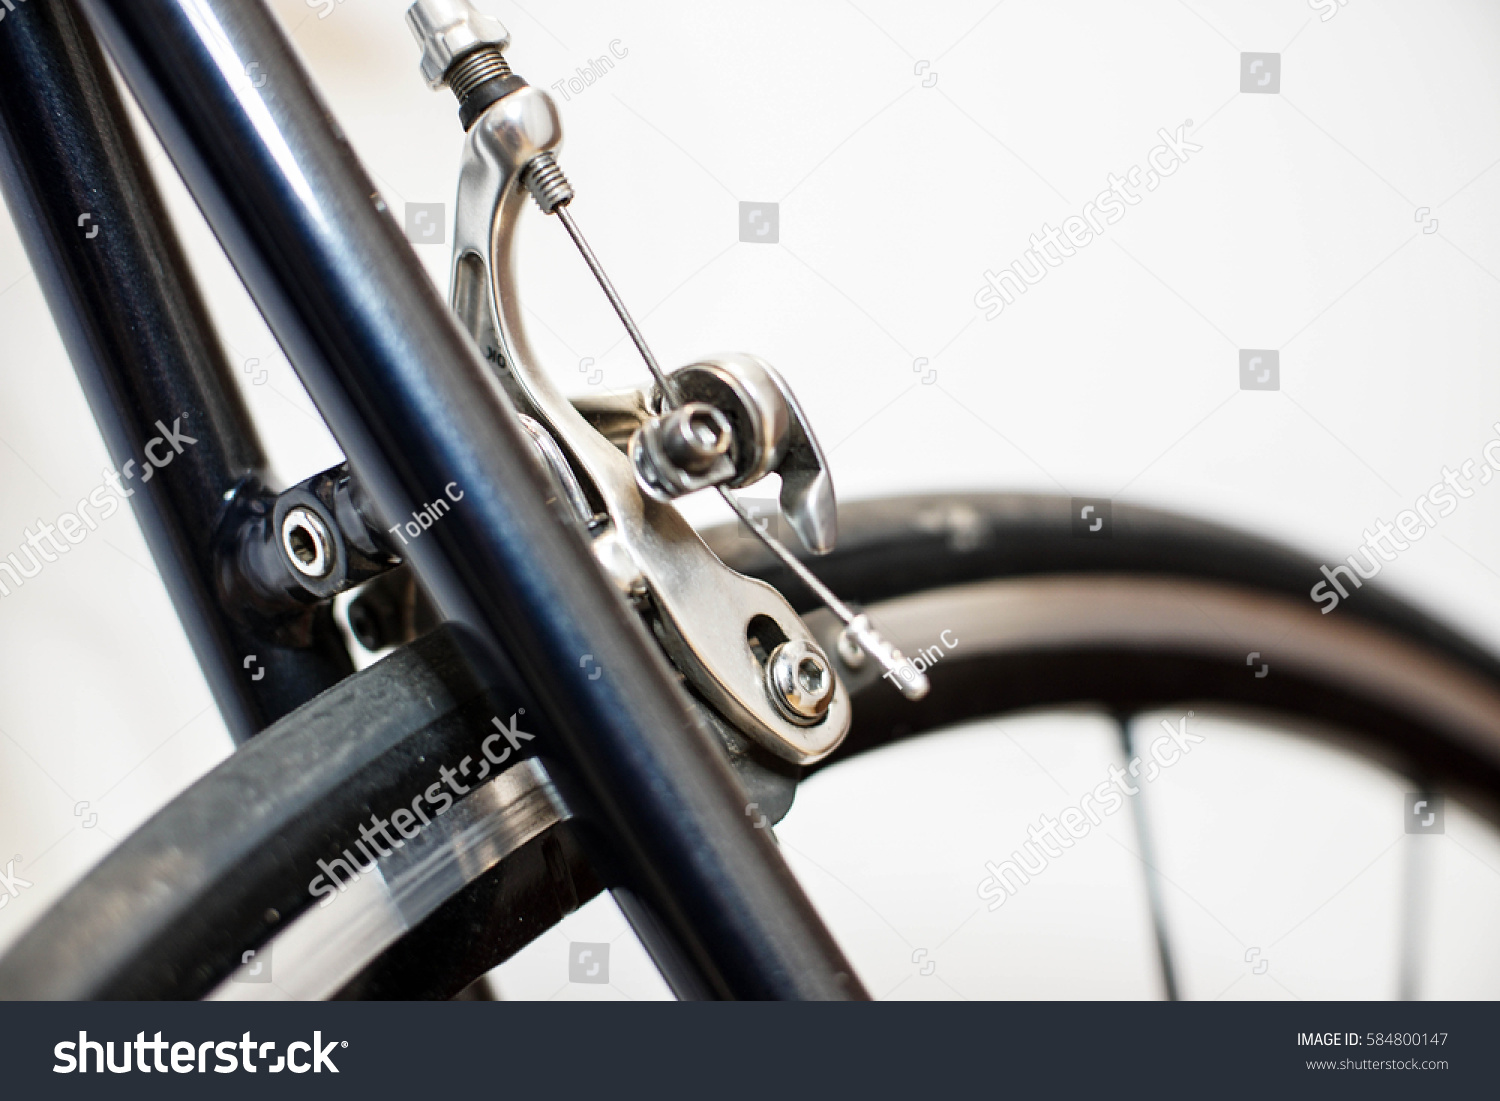 bike rear brake caliper